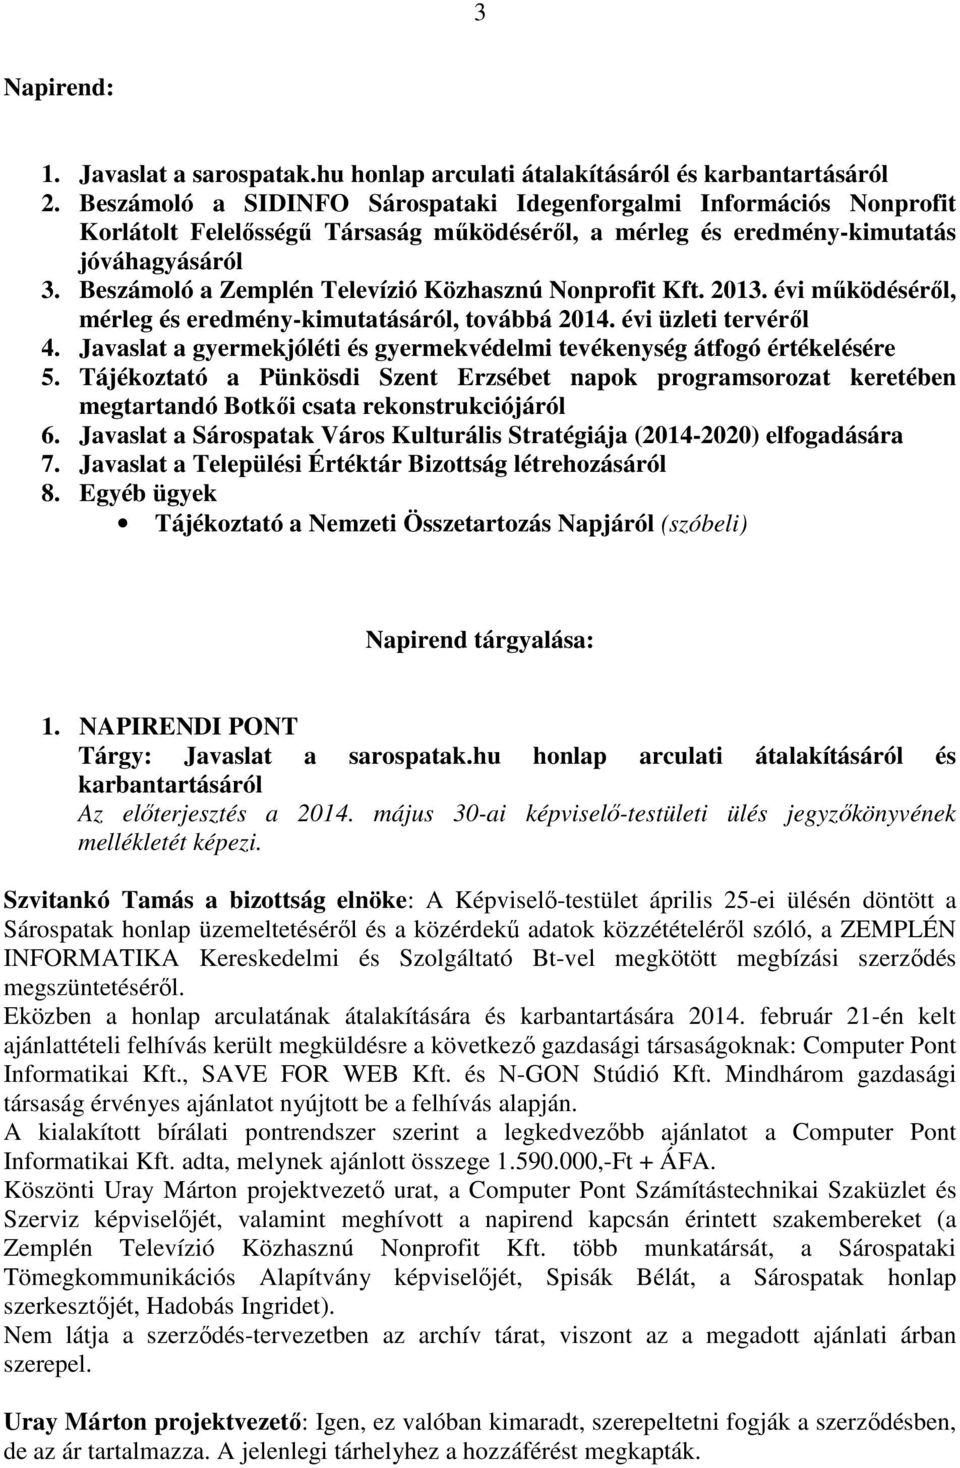 Beszámoló a Zemplén Televízió Közhasznú Nonprofit Kft. 2013. évi működéséről, mérleg és eredmény-kimutatásáról, továbbá 2014. évi üzleti tervéről 4.